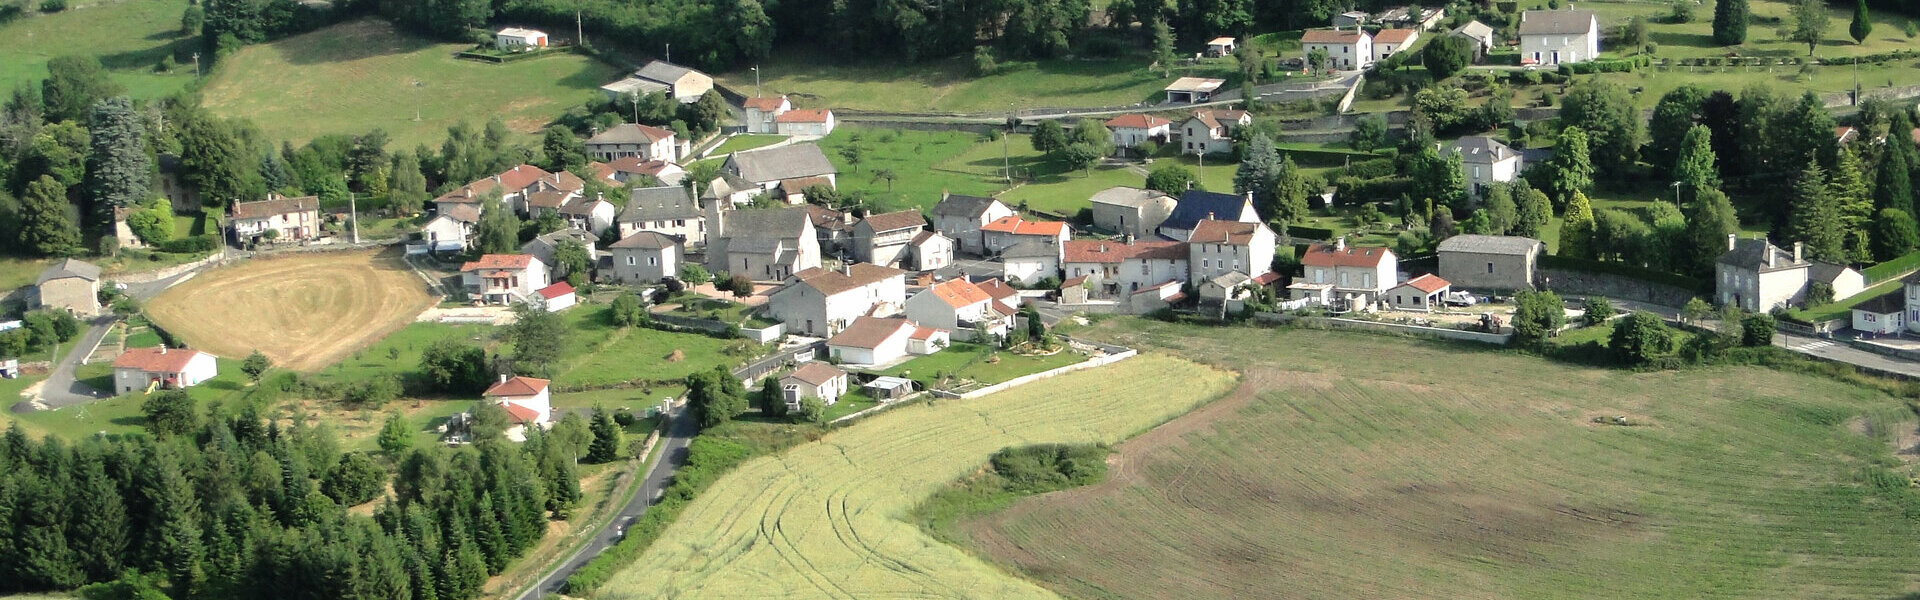 Bienvenue à Roumégoux dans le Cantal